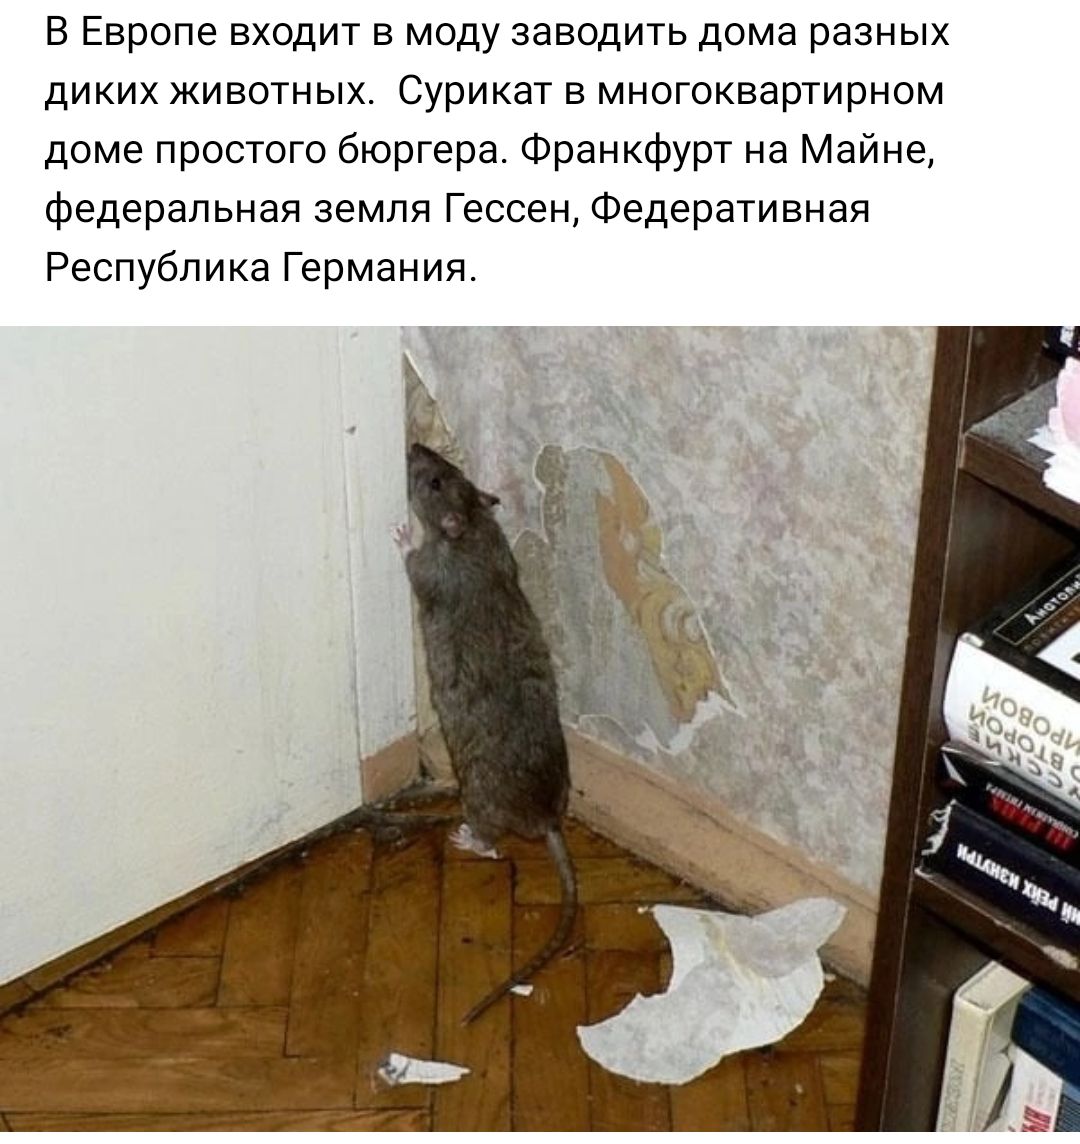 Почему дикая домашняя. Мышь в квартире. Мыши в доме. Крысы в доме.